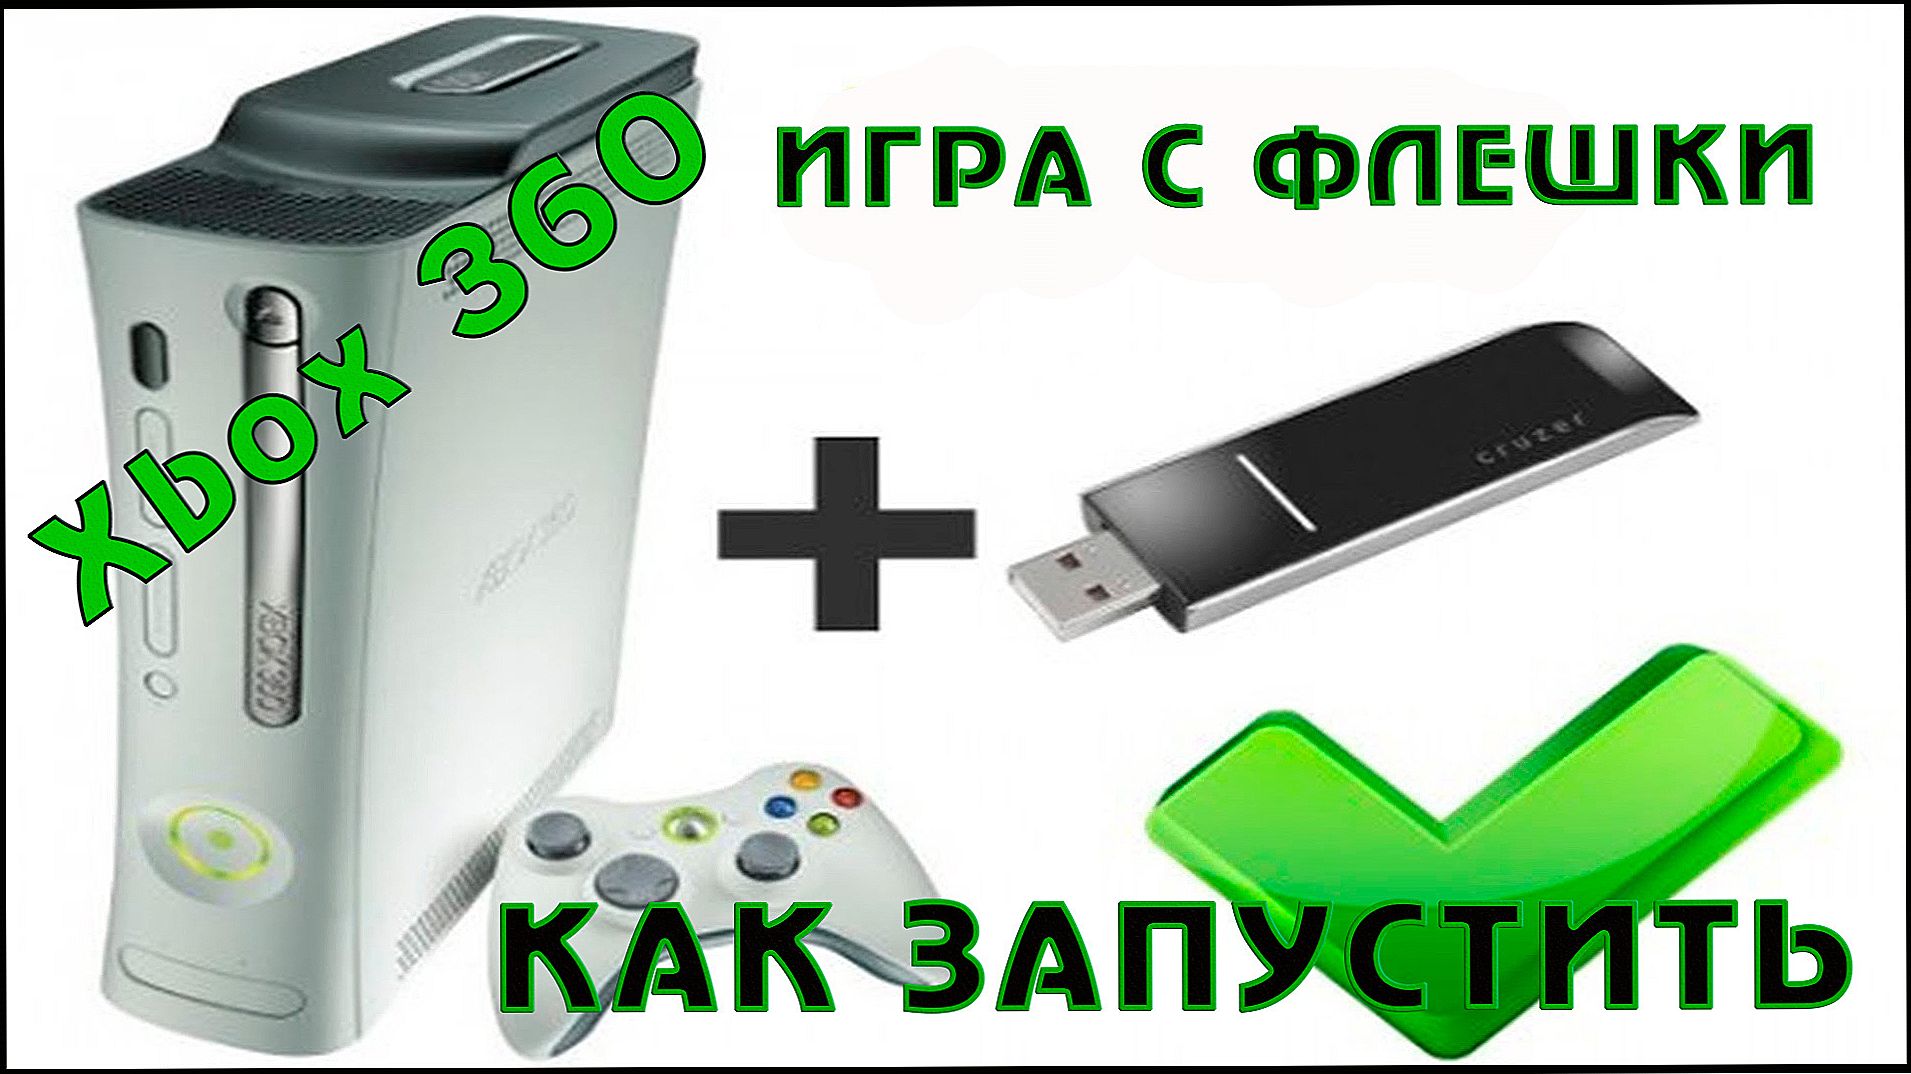 Odtwarzanie na Xbox 360 z pendrive